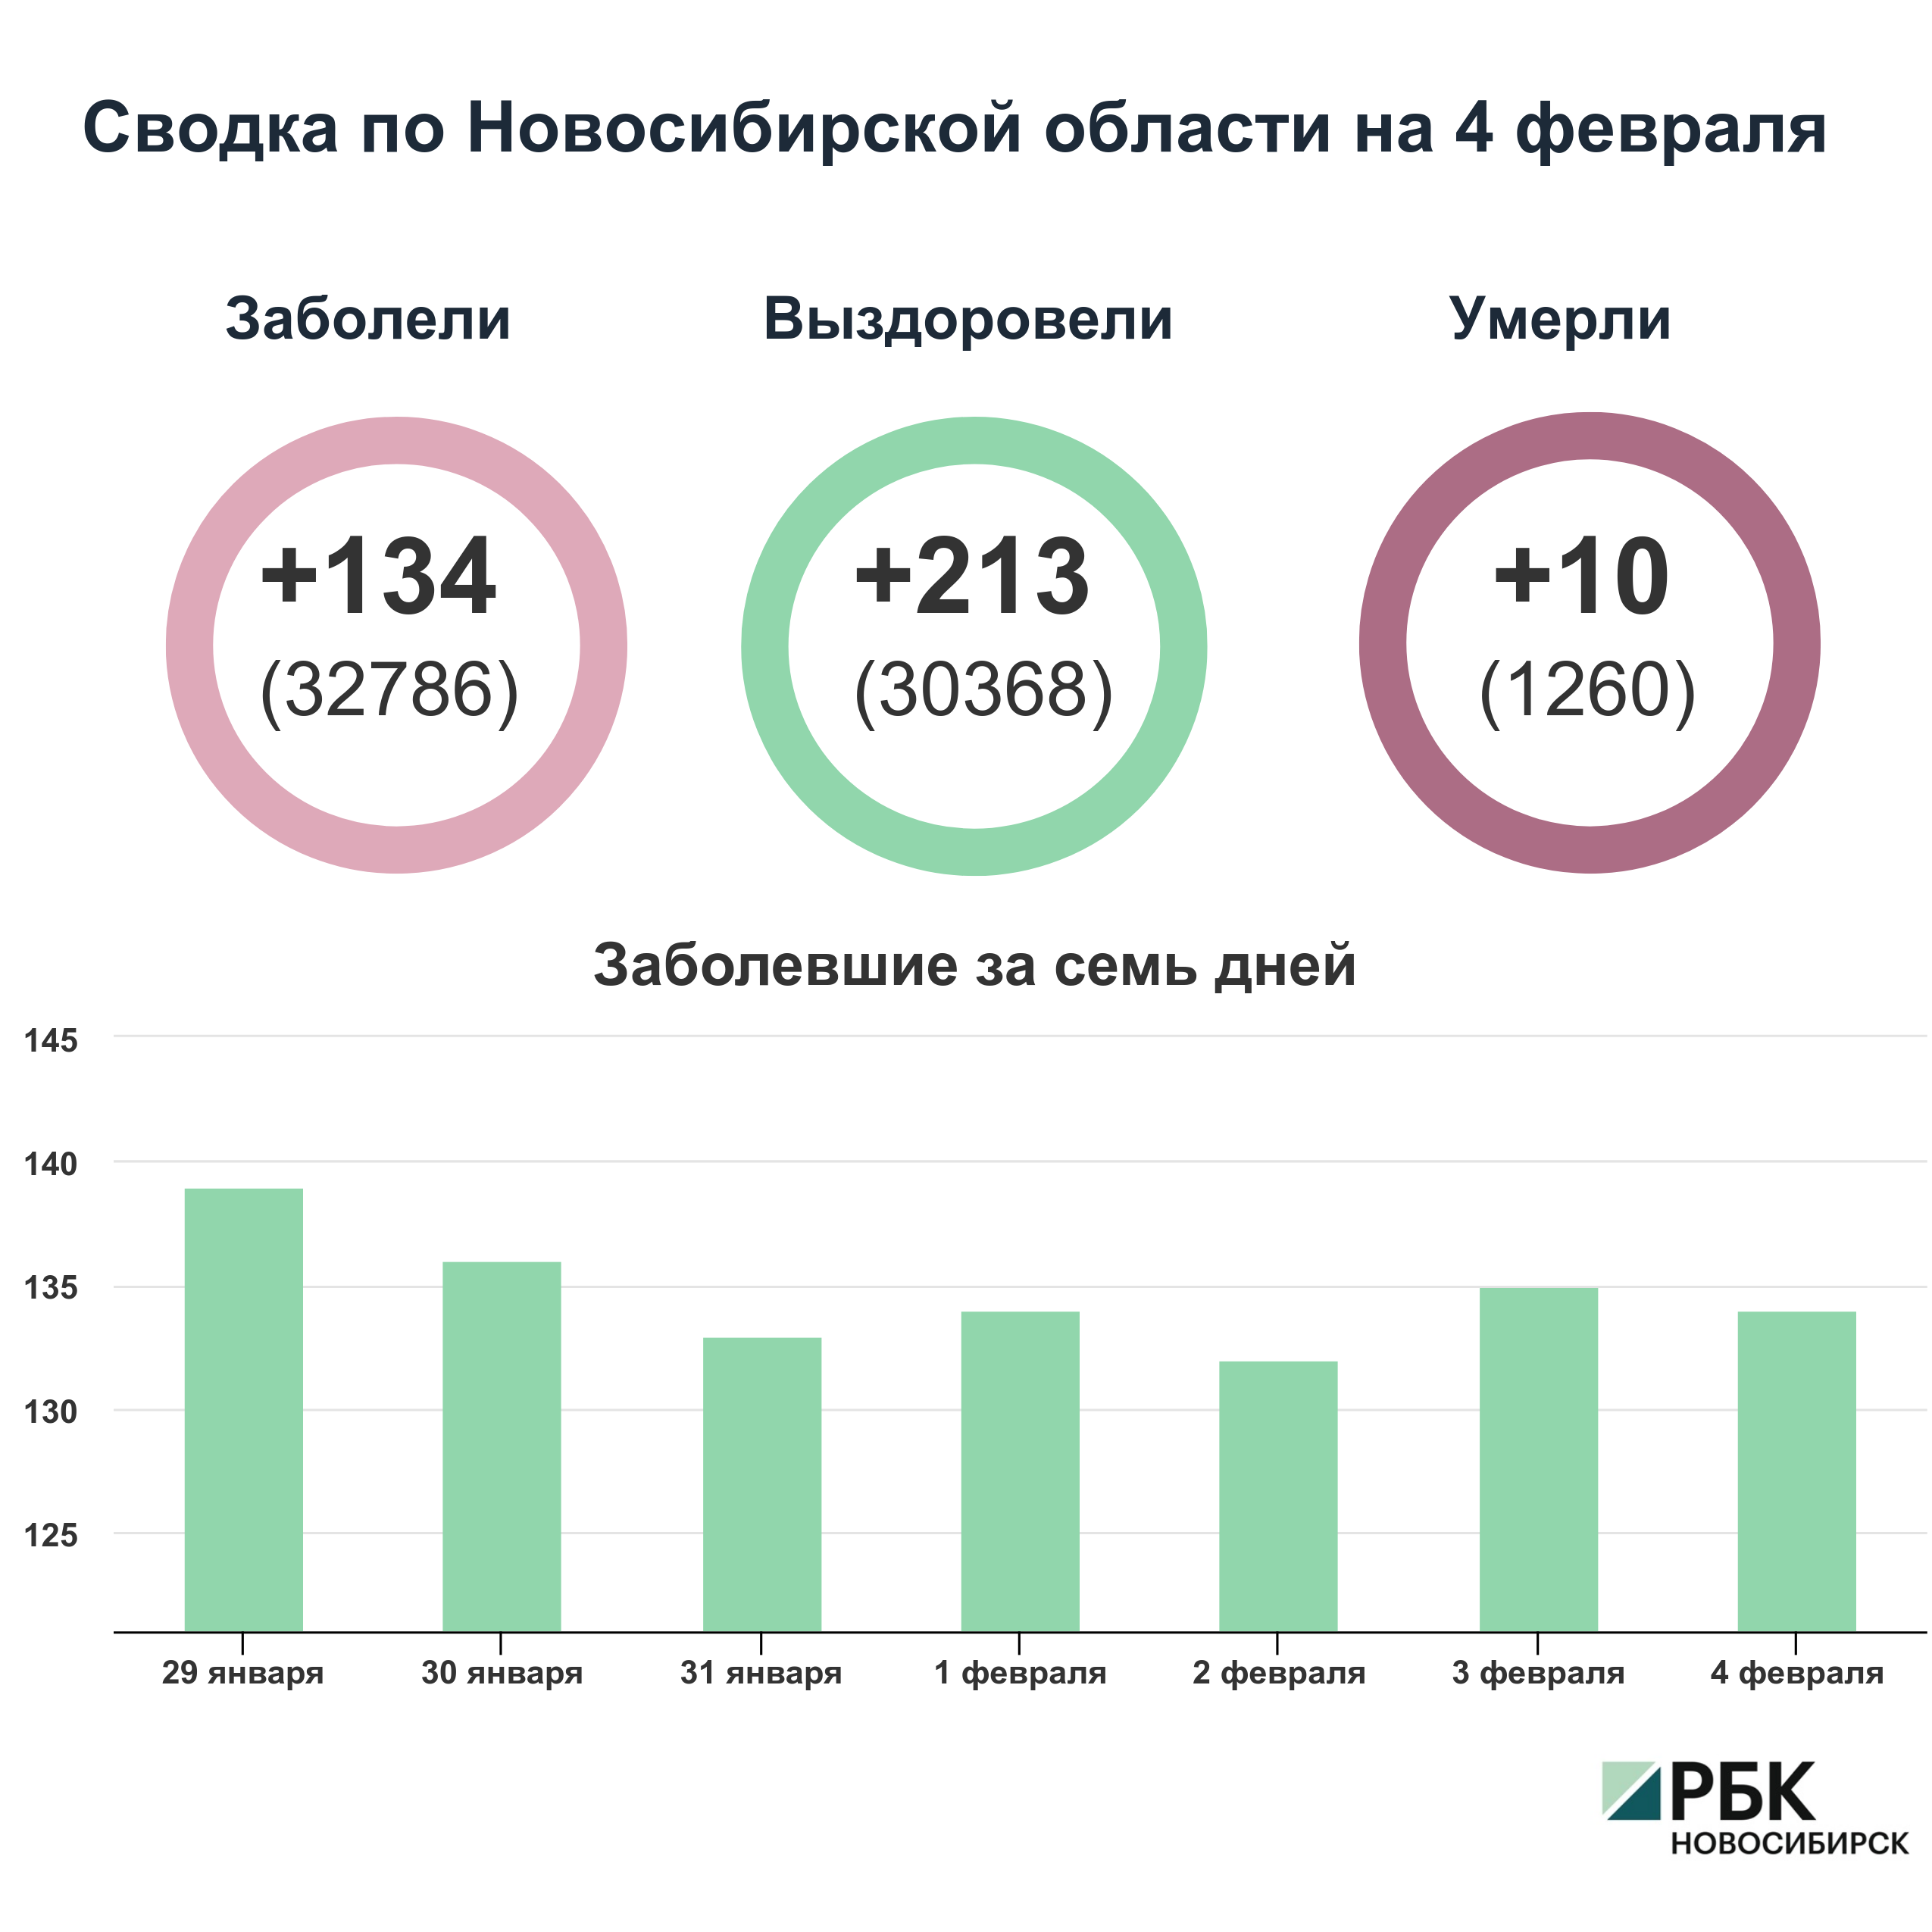 Коронавирус в Новосибирске: сводка на 4 февраля